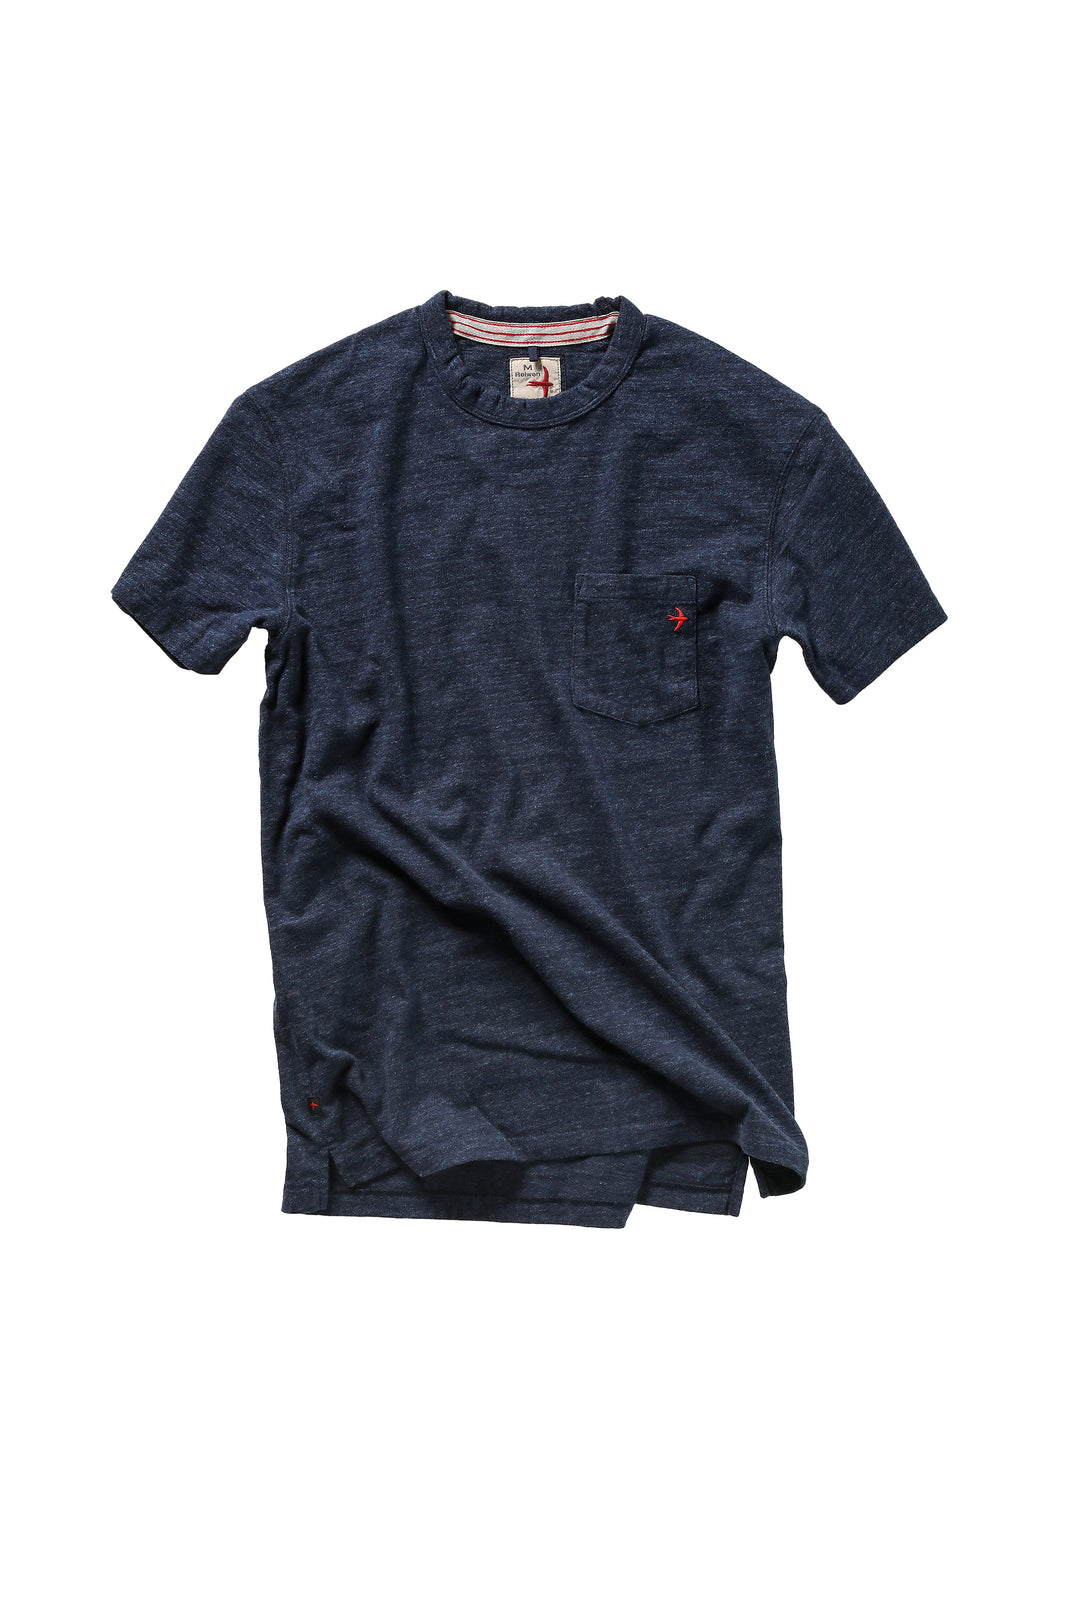 Fintech SS Graphic T-Shirt Men Small Dress Blues Design Ringspun Cotton NEW